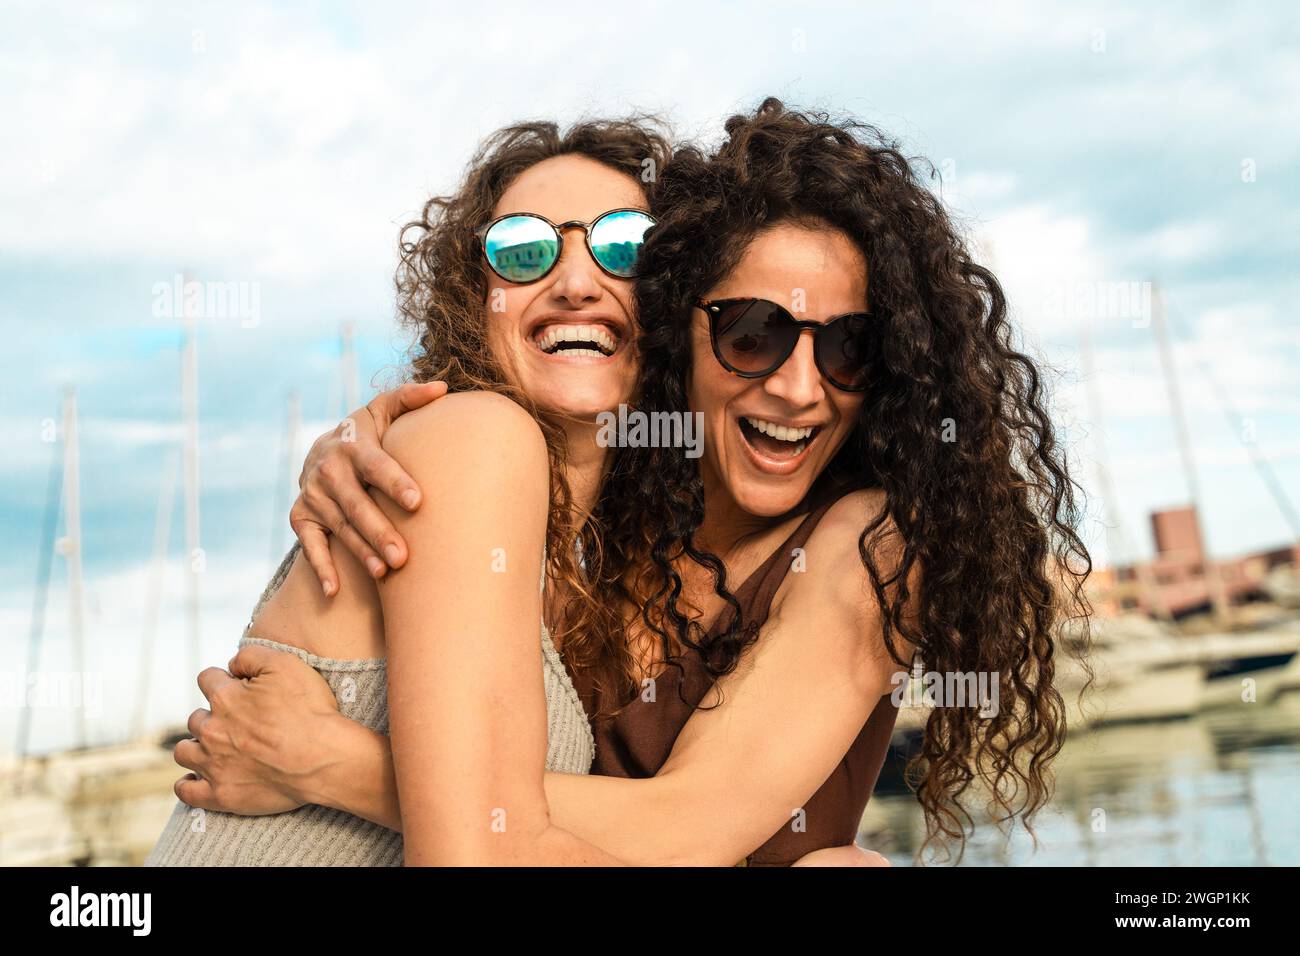 Zwei enge Freunde teilen sich eine Umarmung und ein Lachen auf einer Yacht und schätzen den Moment. Stockfoto